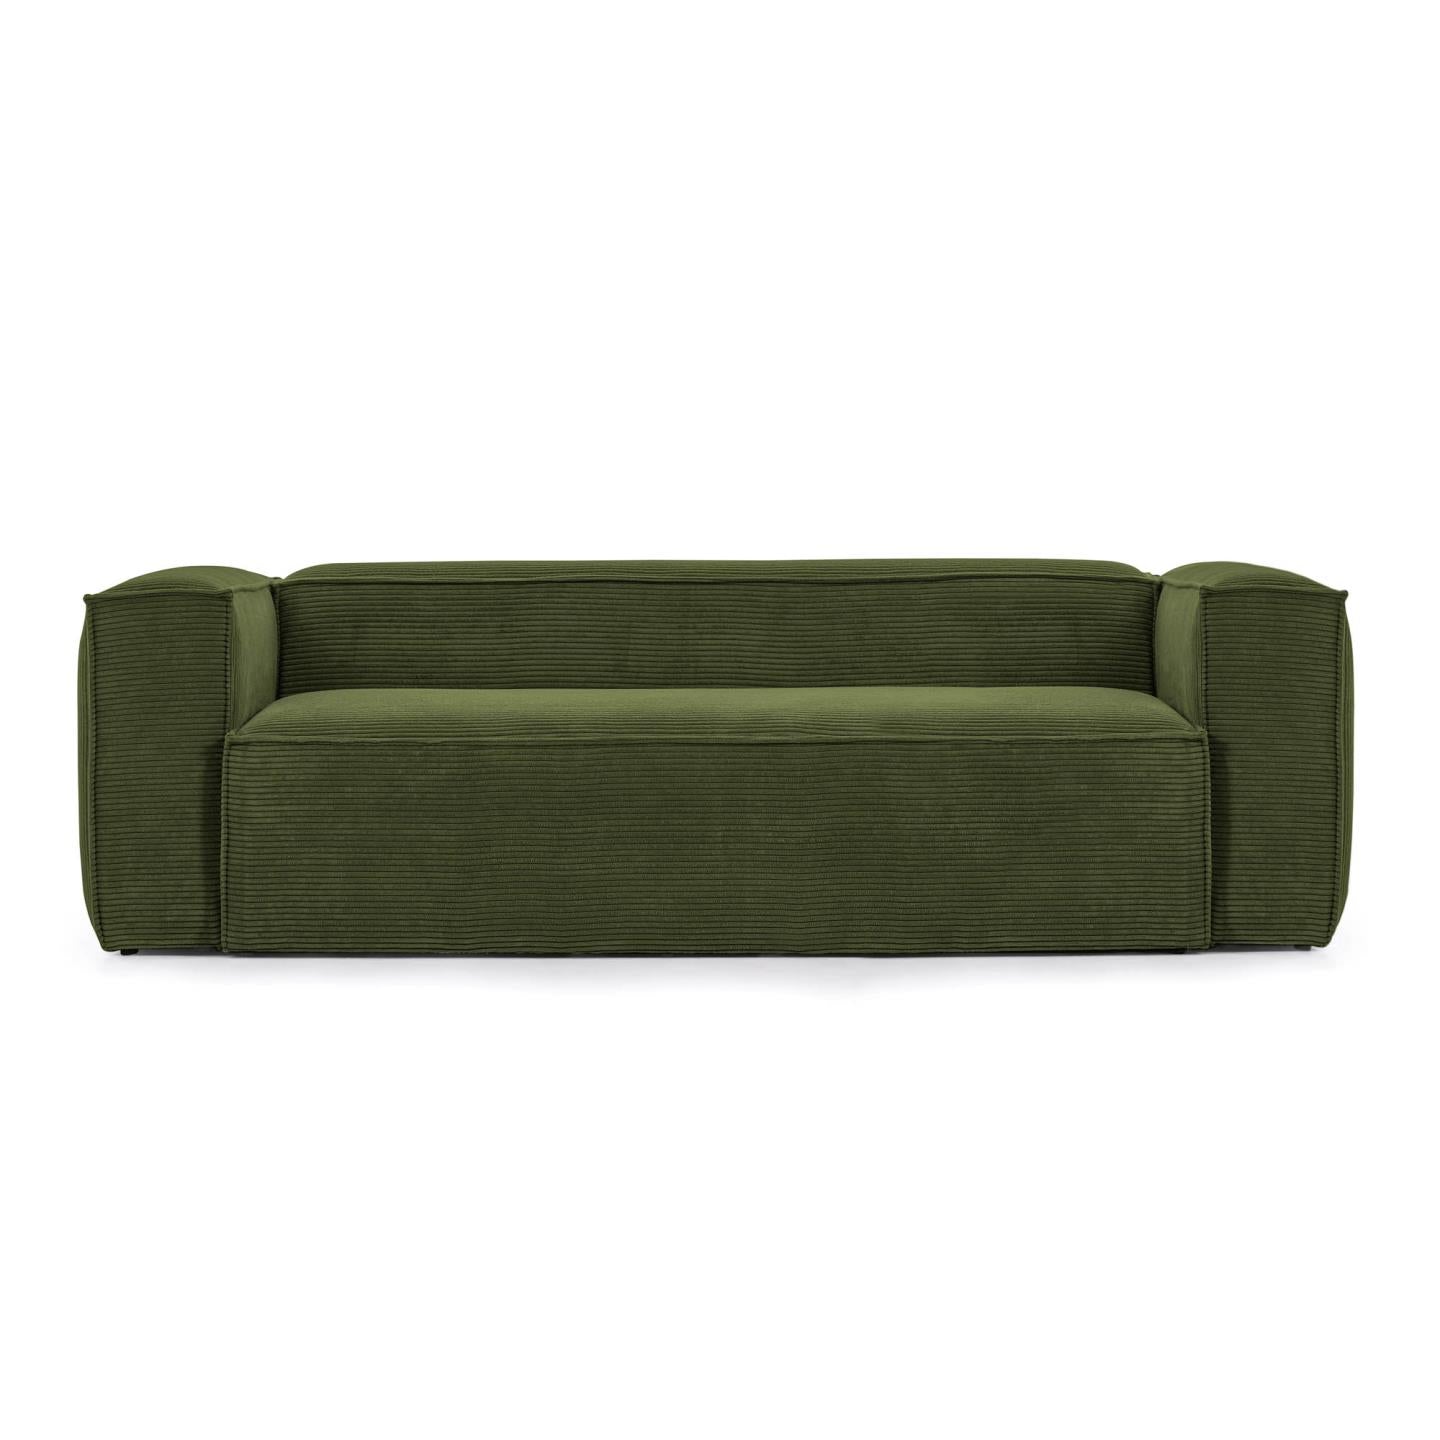 Blok 2 személyes kanapé, zöld, széles varrású kordbársony, 210 cm